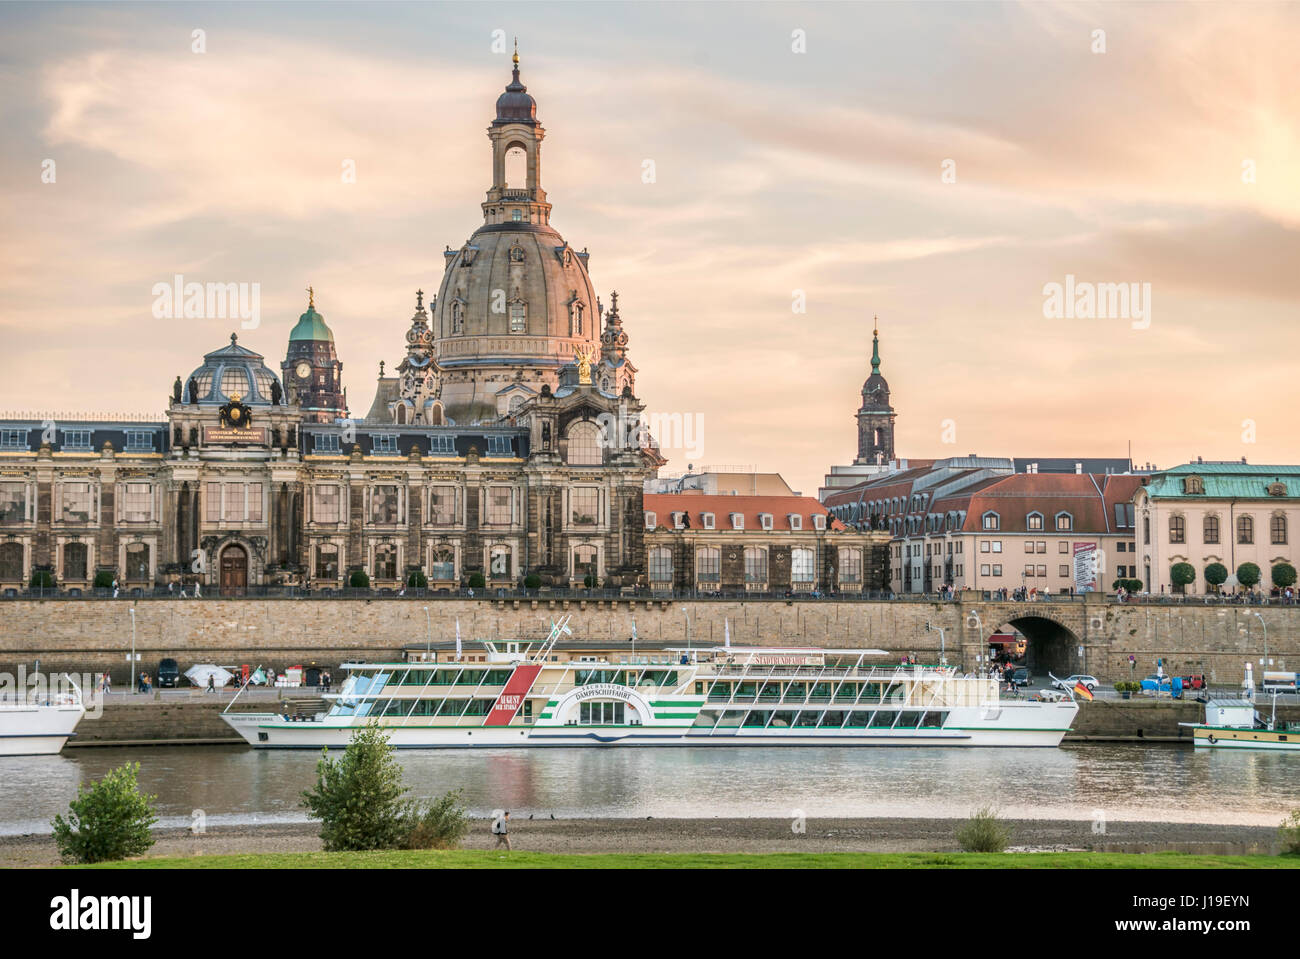 Alba al fiume Elba nella parte anteriore della skyline di Dresda, Sassonia, Germania Foto Stock